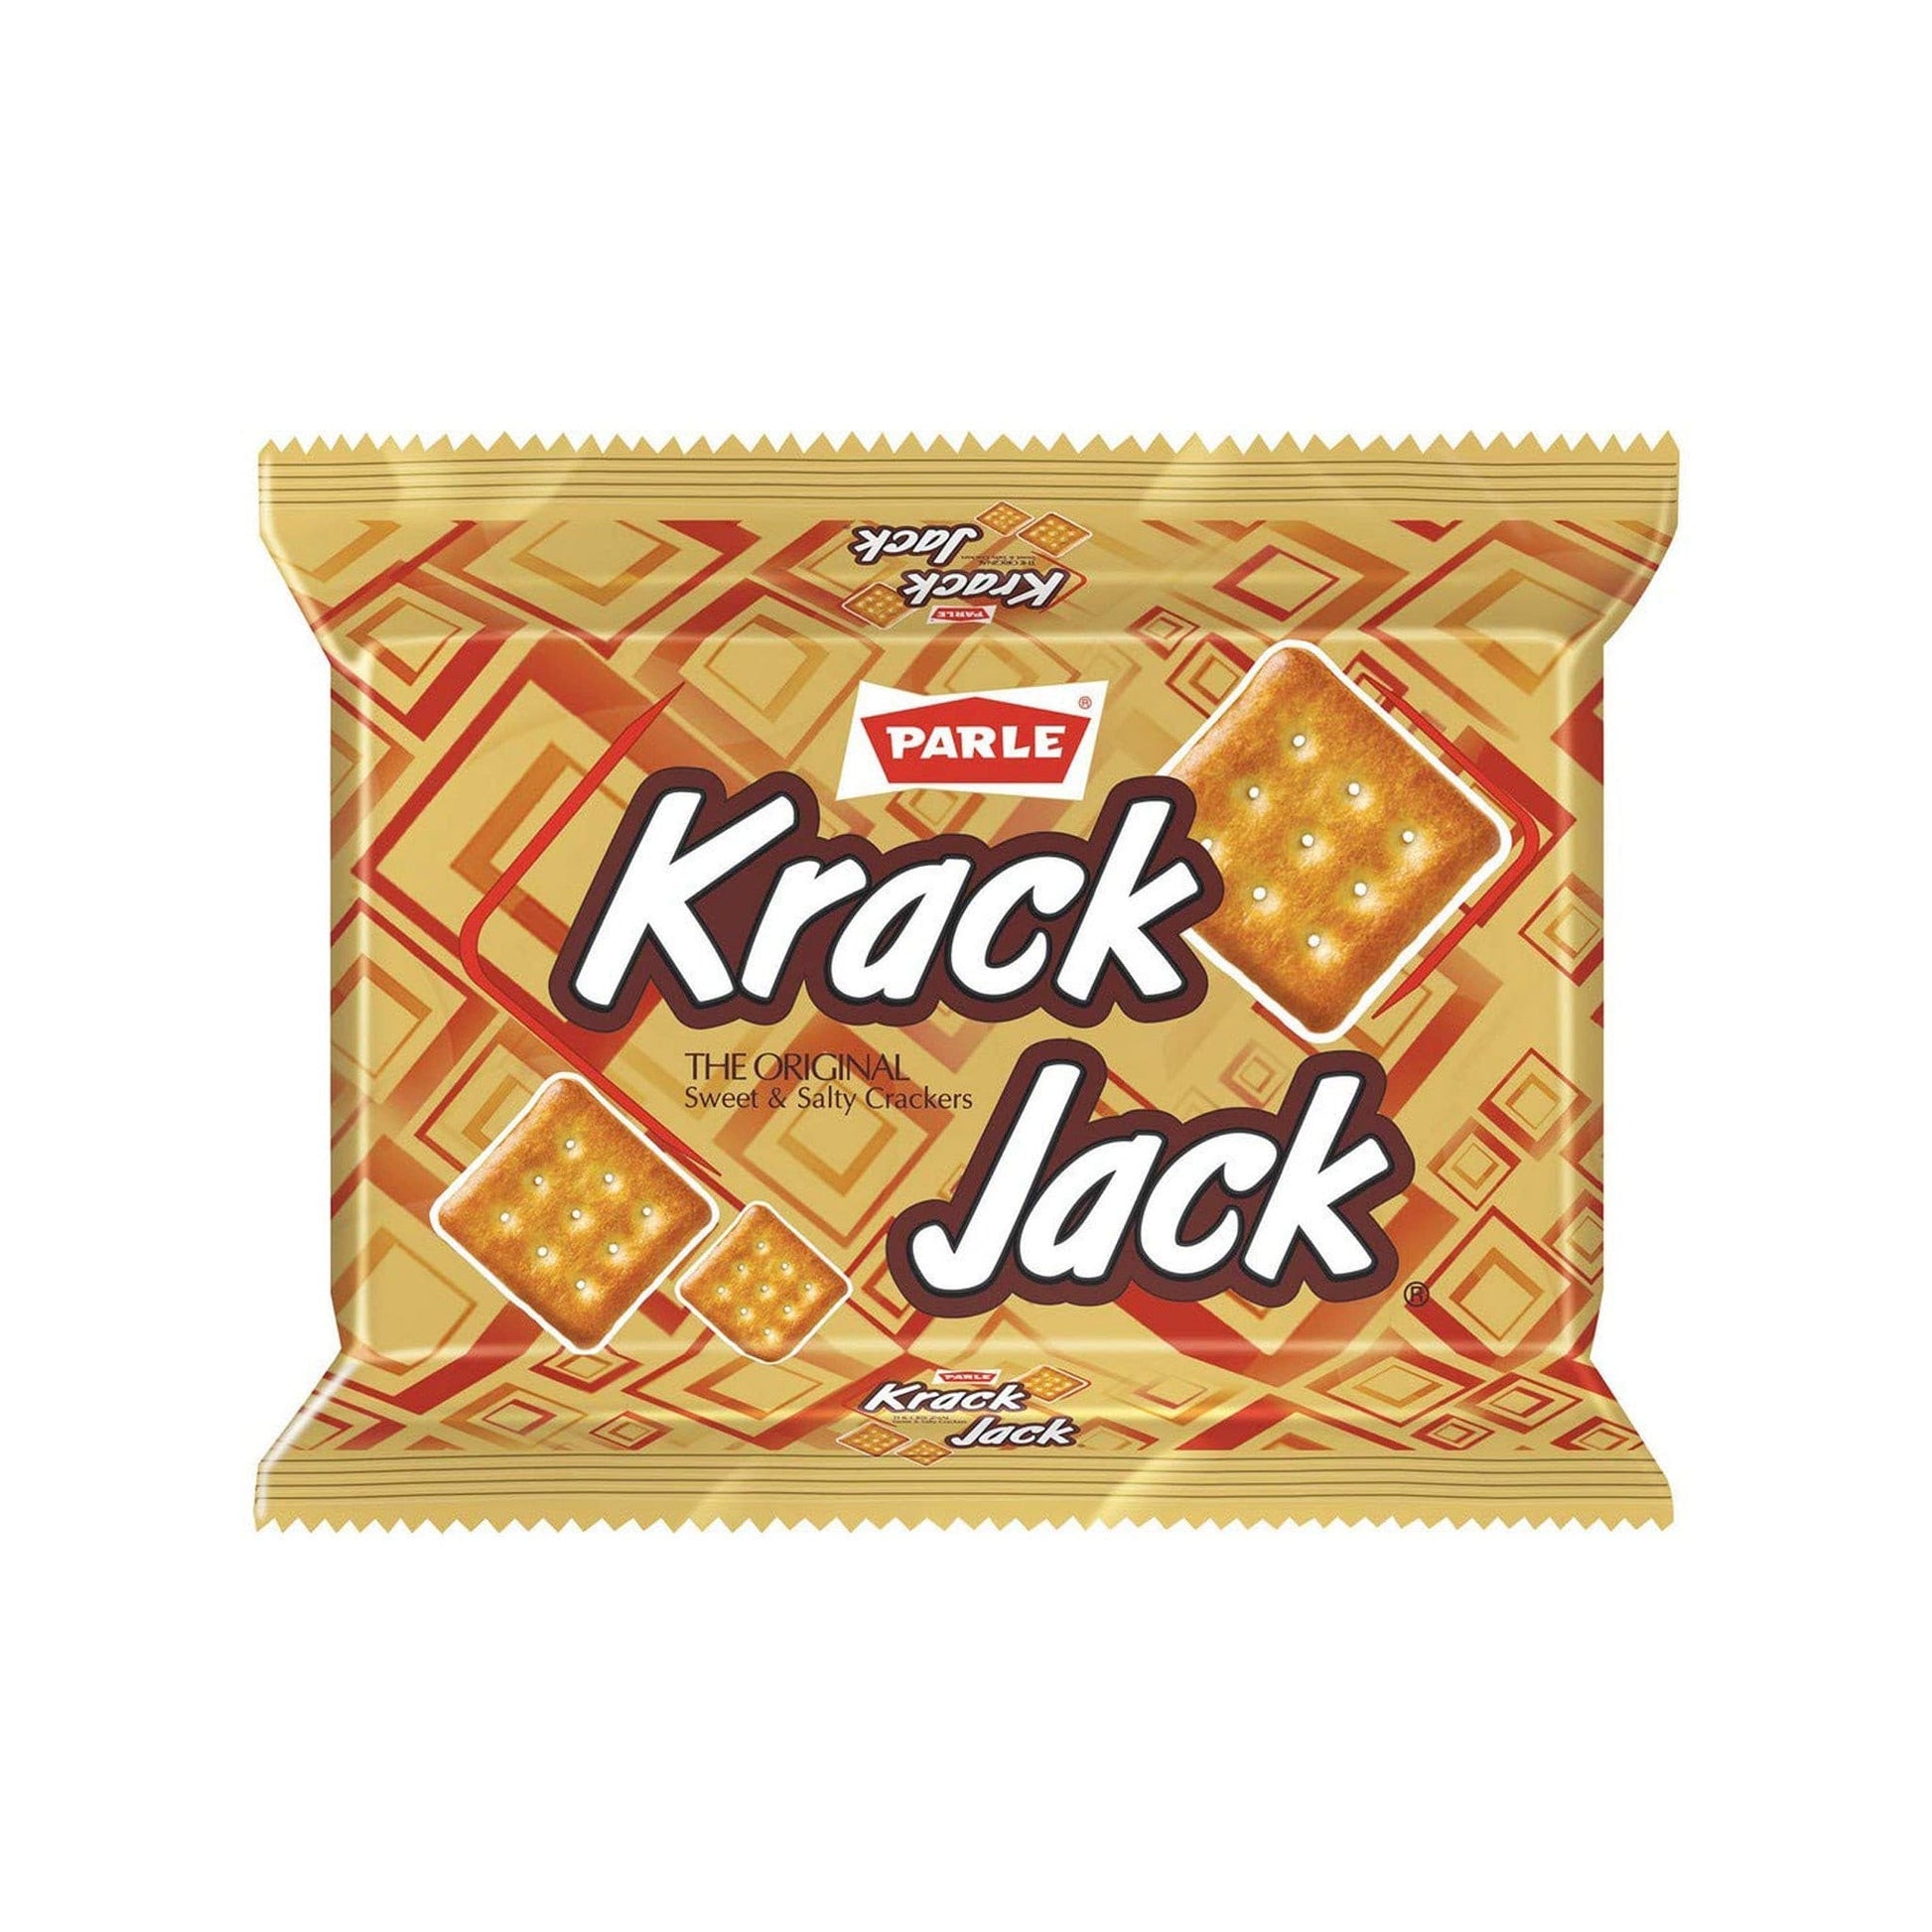 Parle KrackJack.